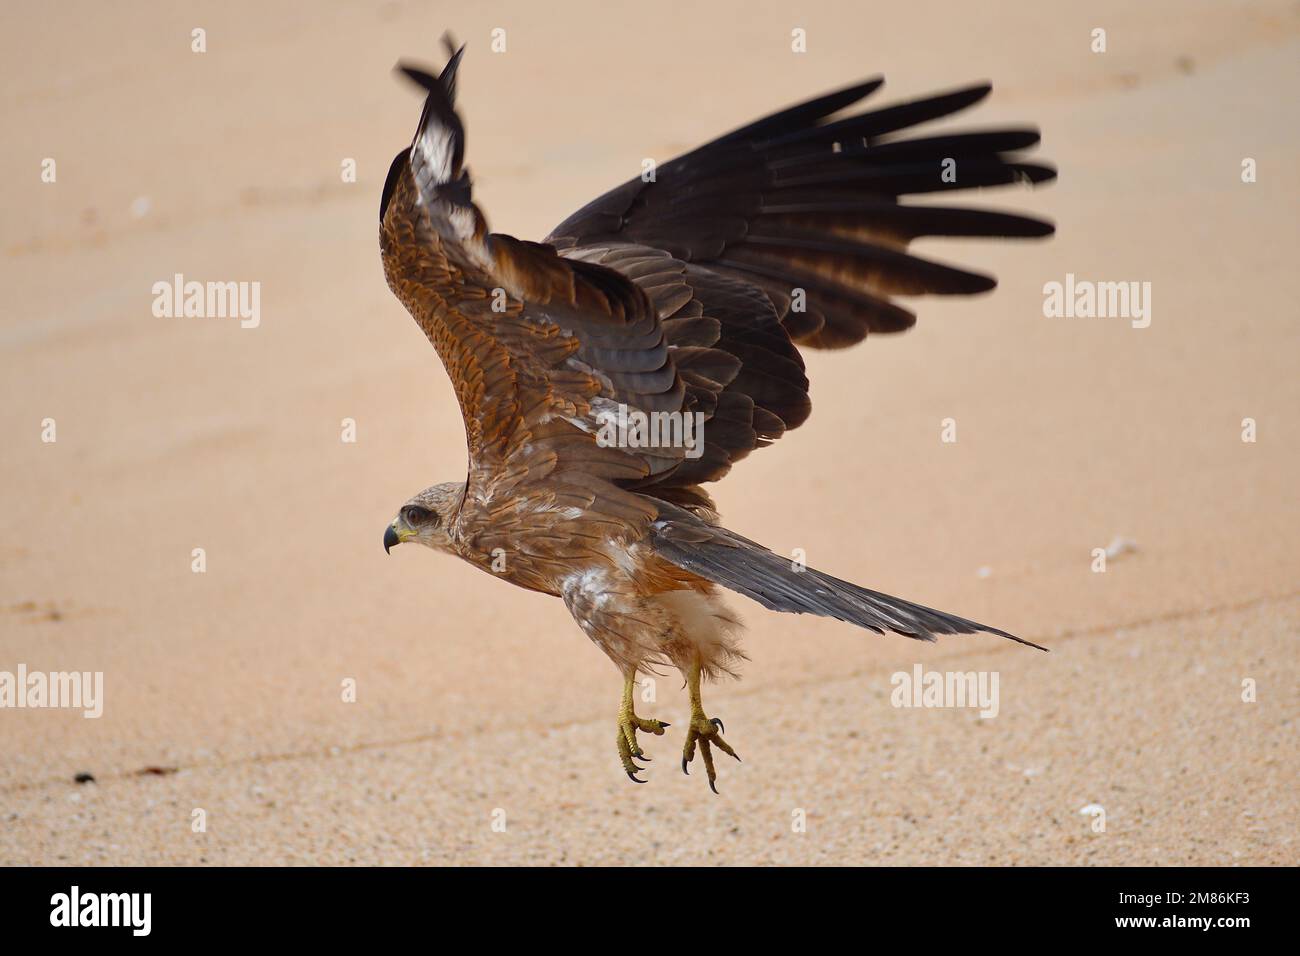 Aquila che vola con le ali spalancate nel cielo Foto Stock